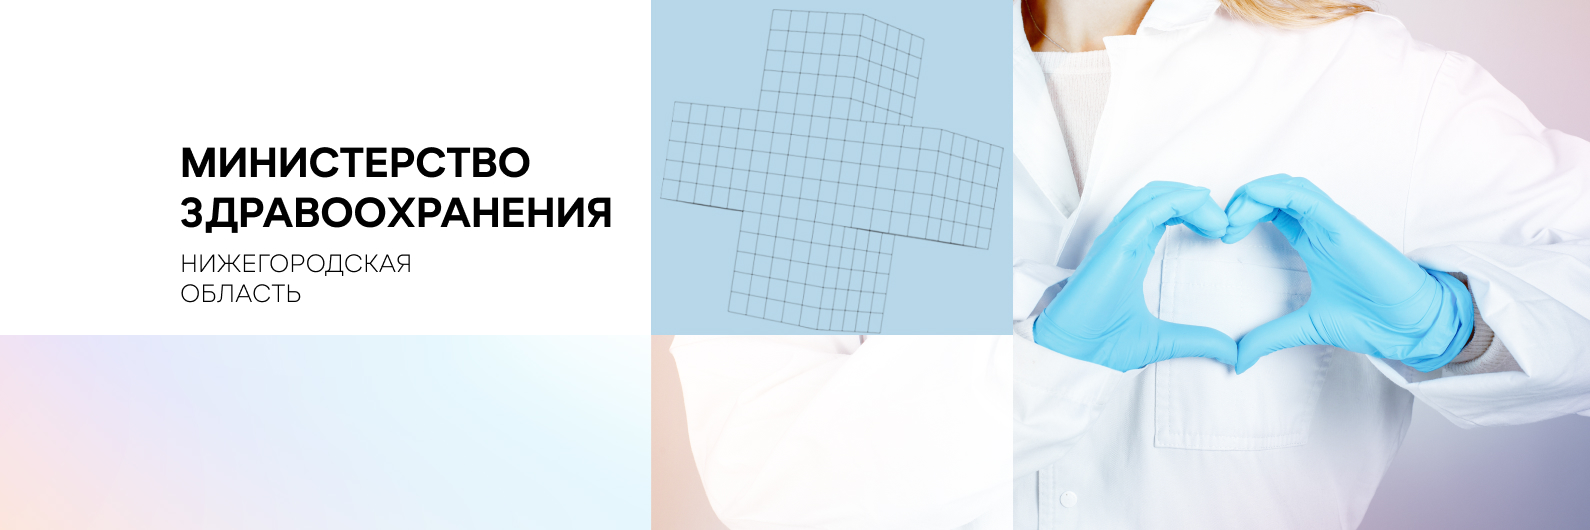 Более 15 миллионов рублей направлено на ремонт поликлиники №2 в Дзержинске в рамках нацпроекта "Здравоохранение"